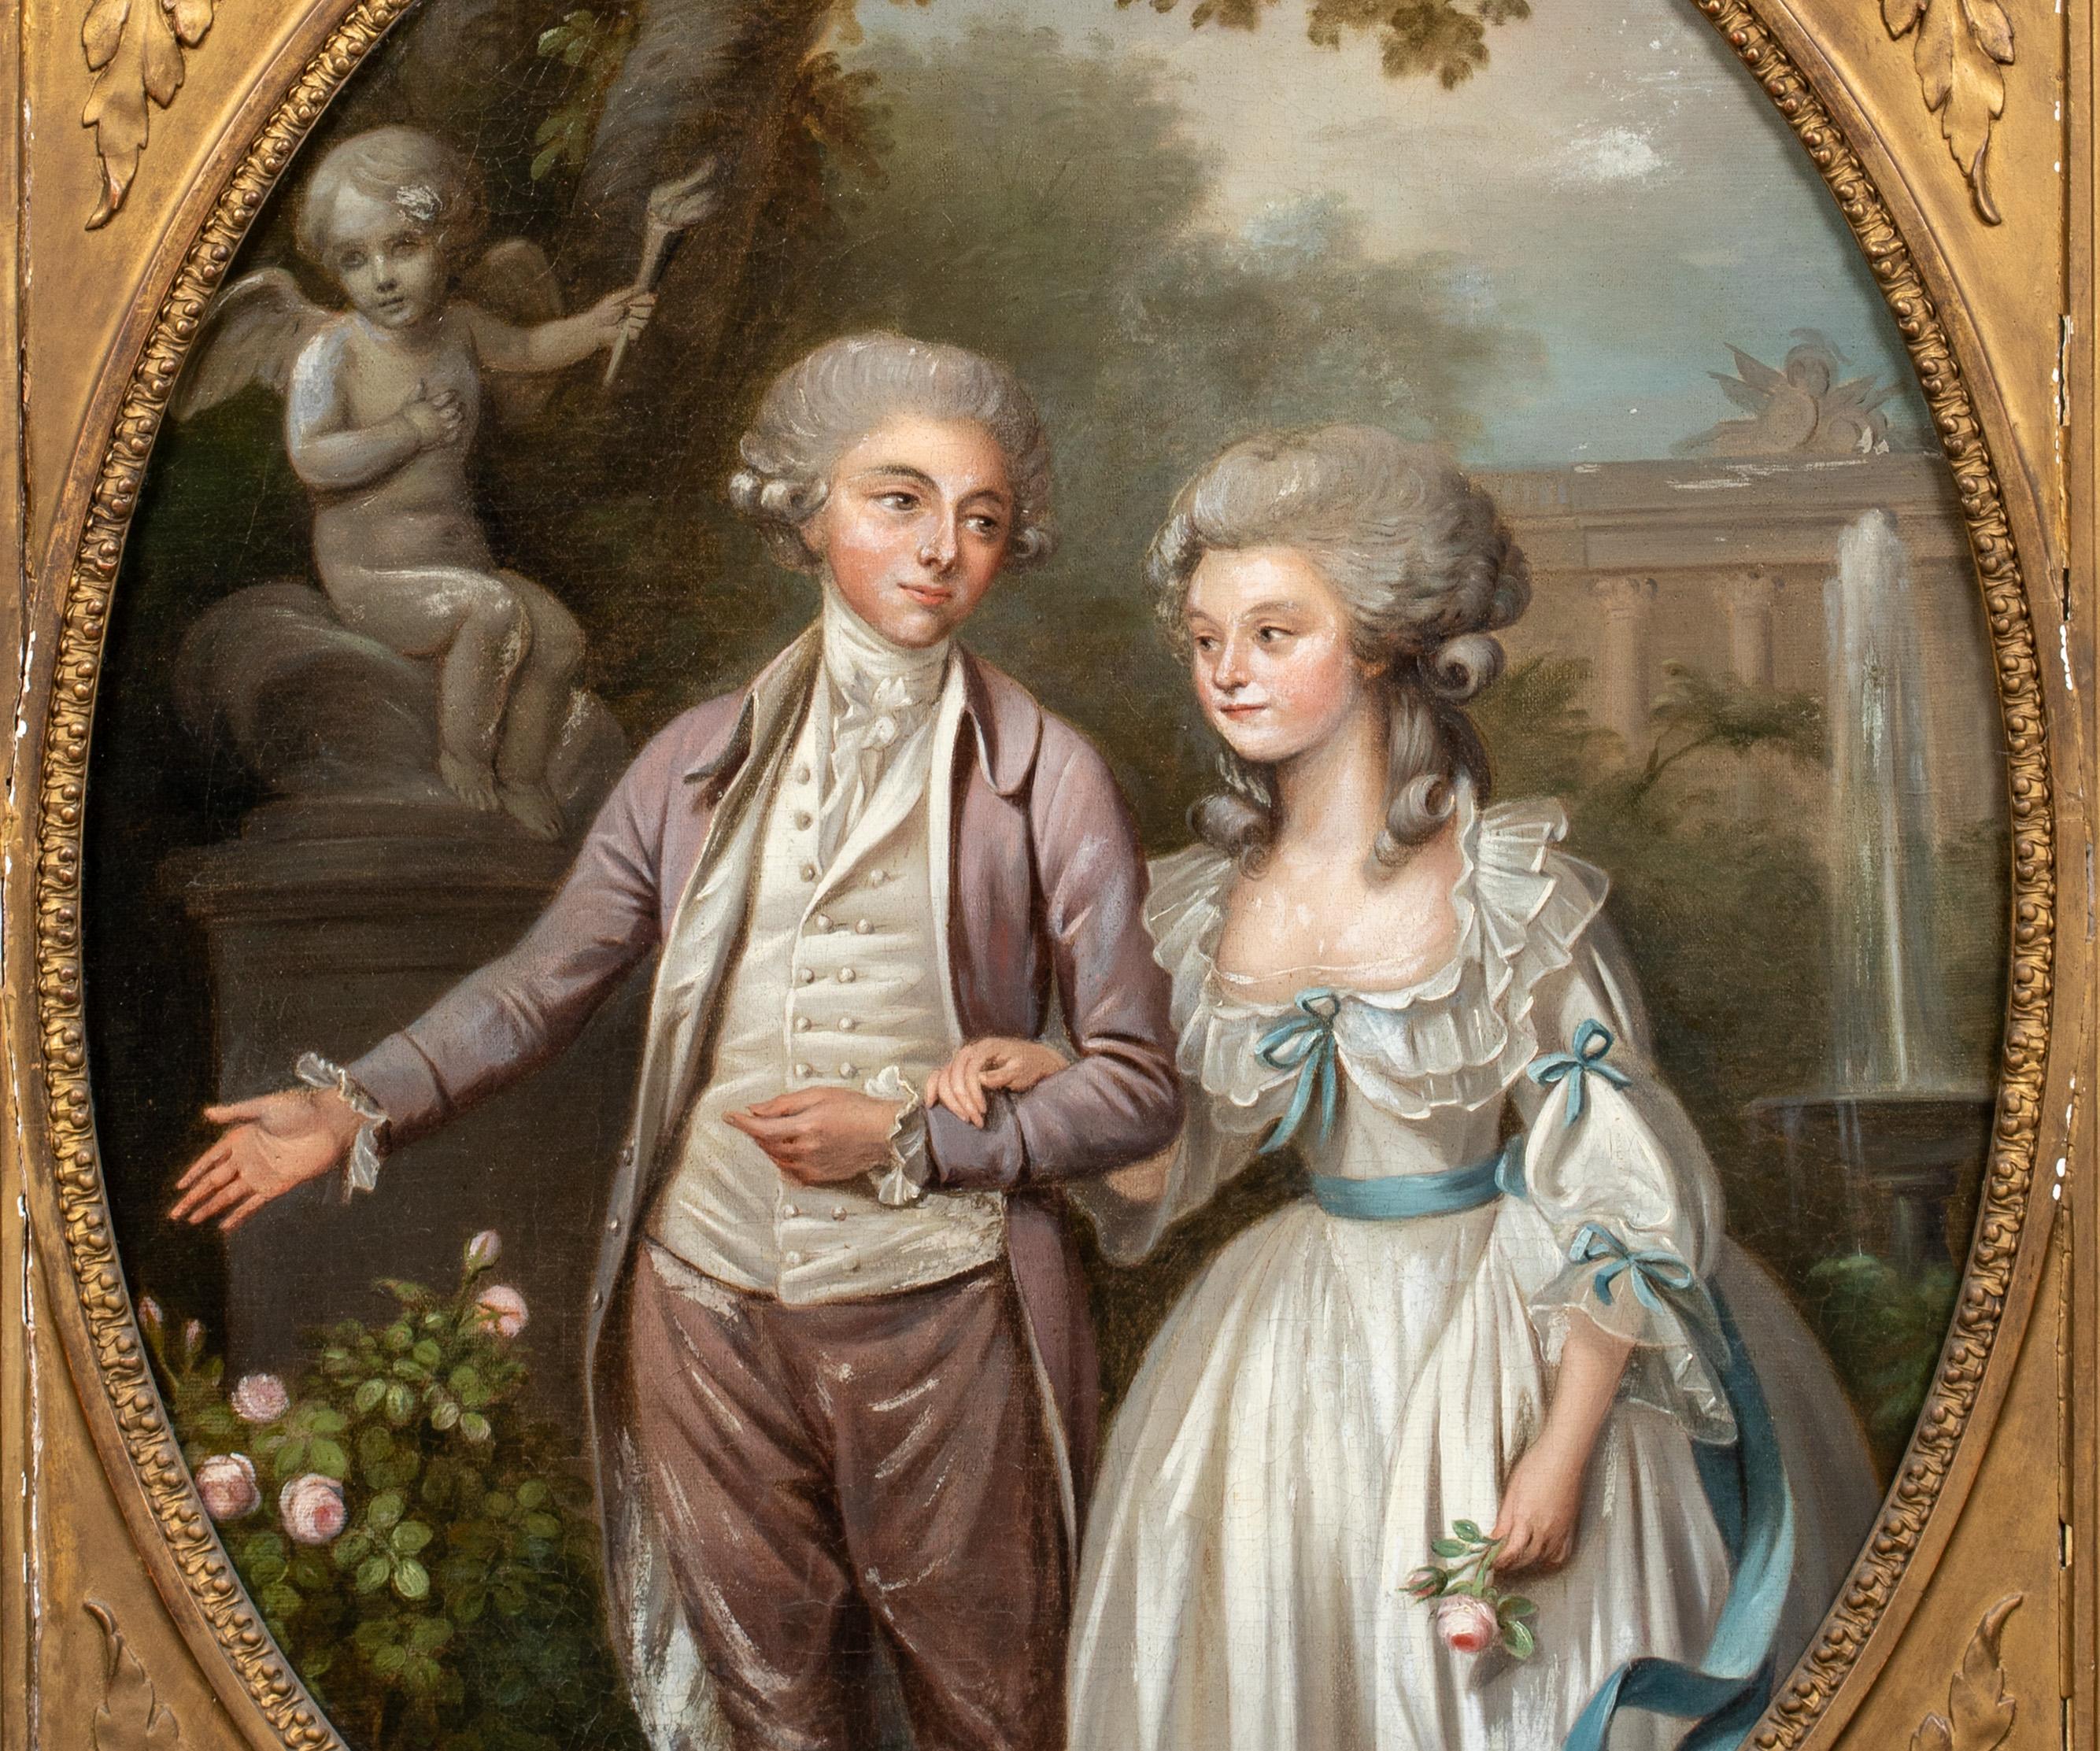 Amoureux dans le jardin, 18ème siècle

École d'anglais 

Grand portrait de l'école anglaise du XVIIIe siècle représentant un mari et une femme dans un jardin à l'italienne, huile sur toile. Portrait et pièce d'époque d'excellente qualité et